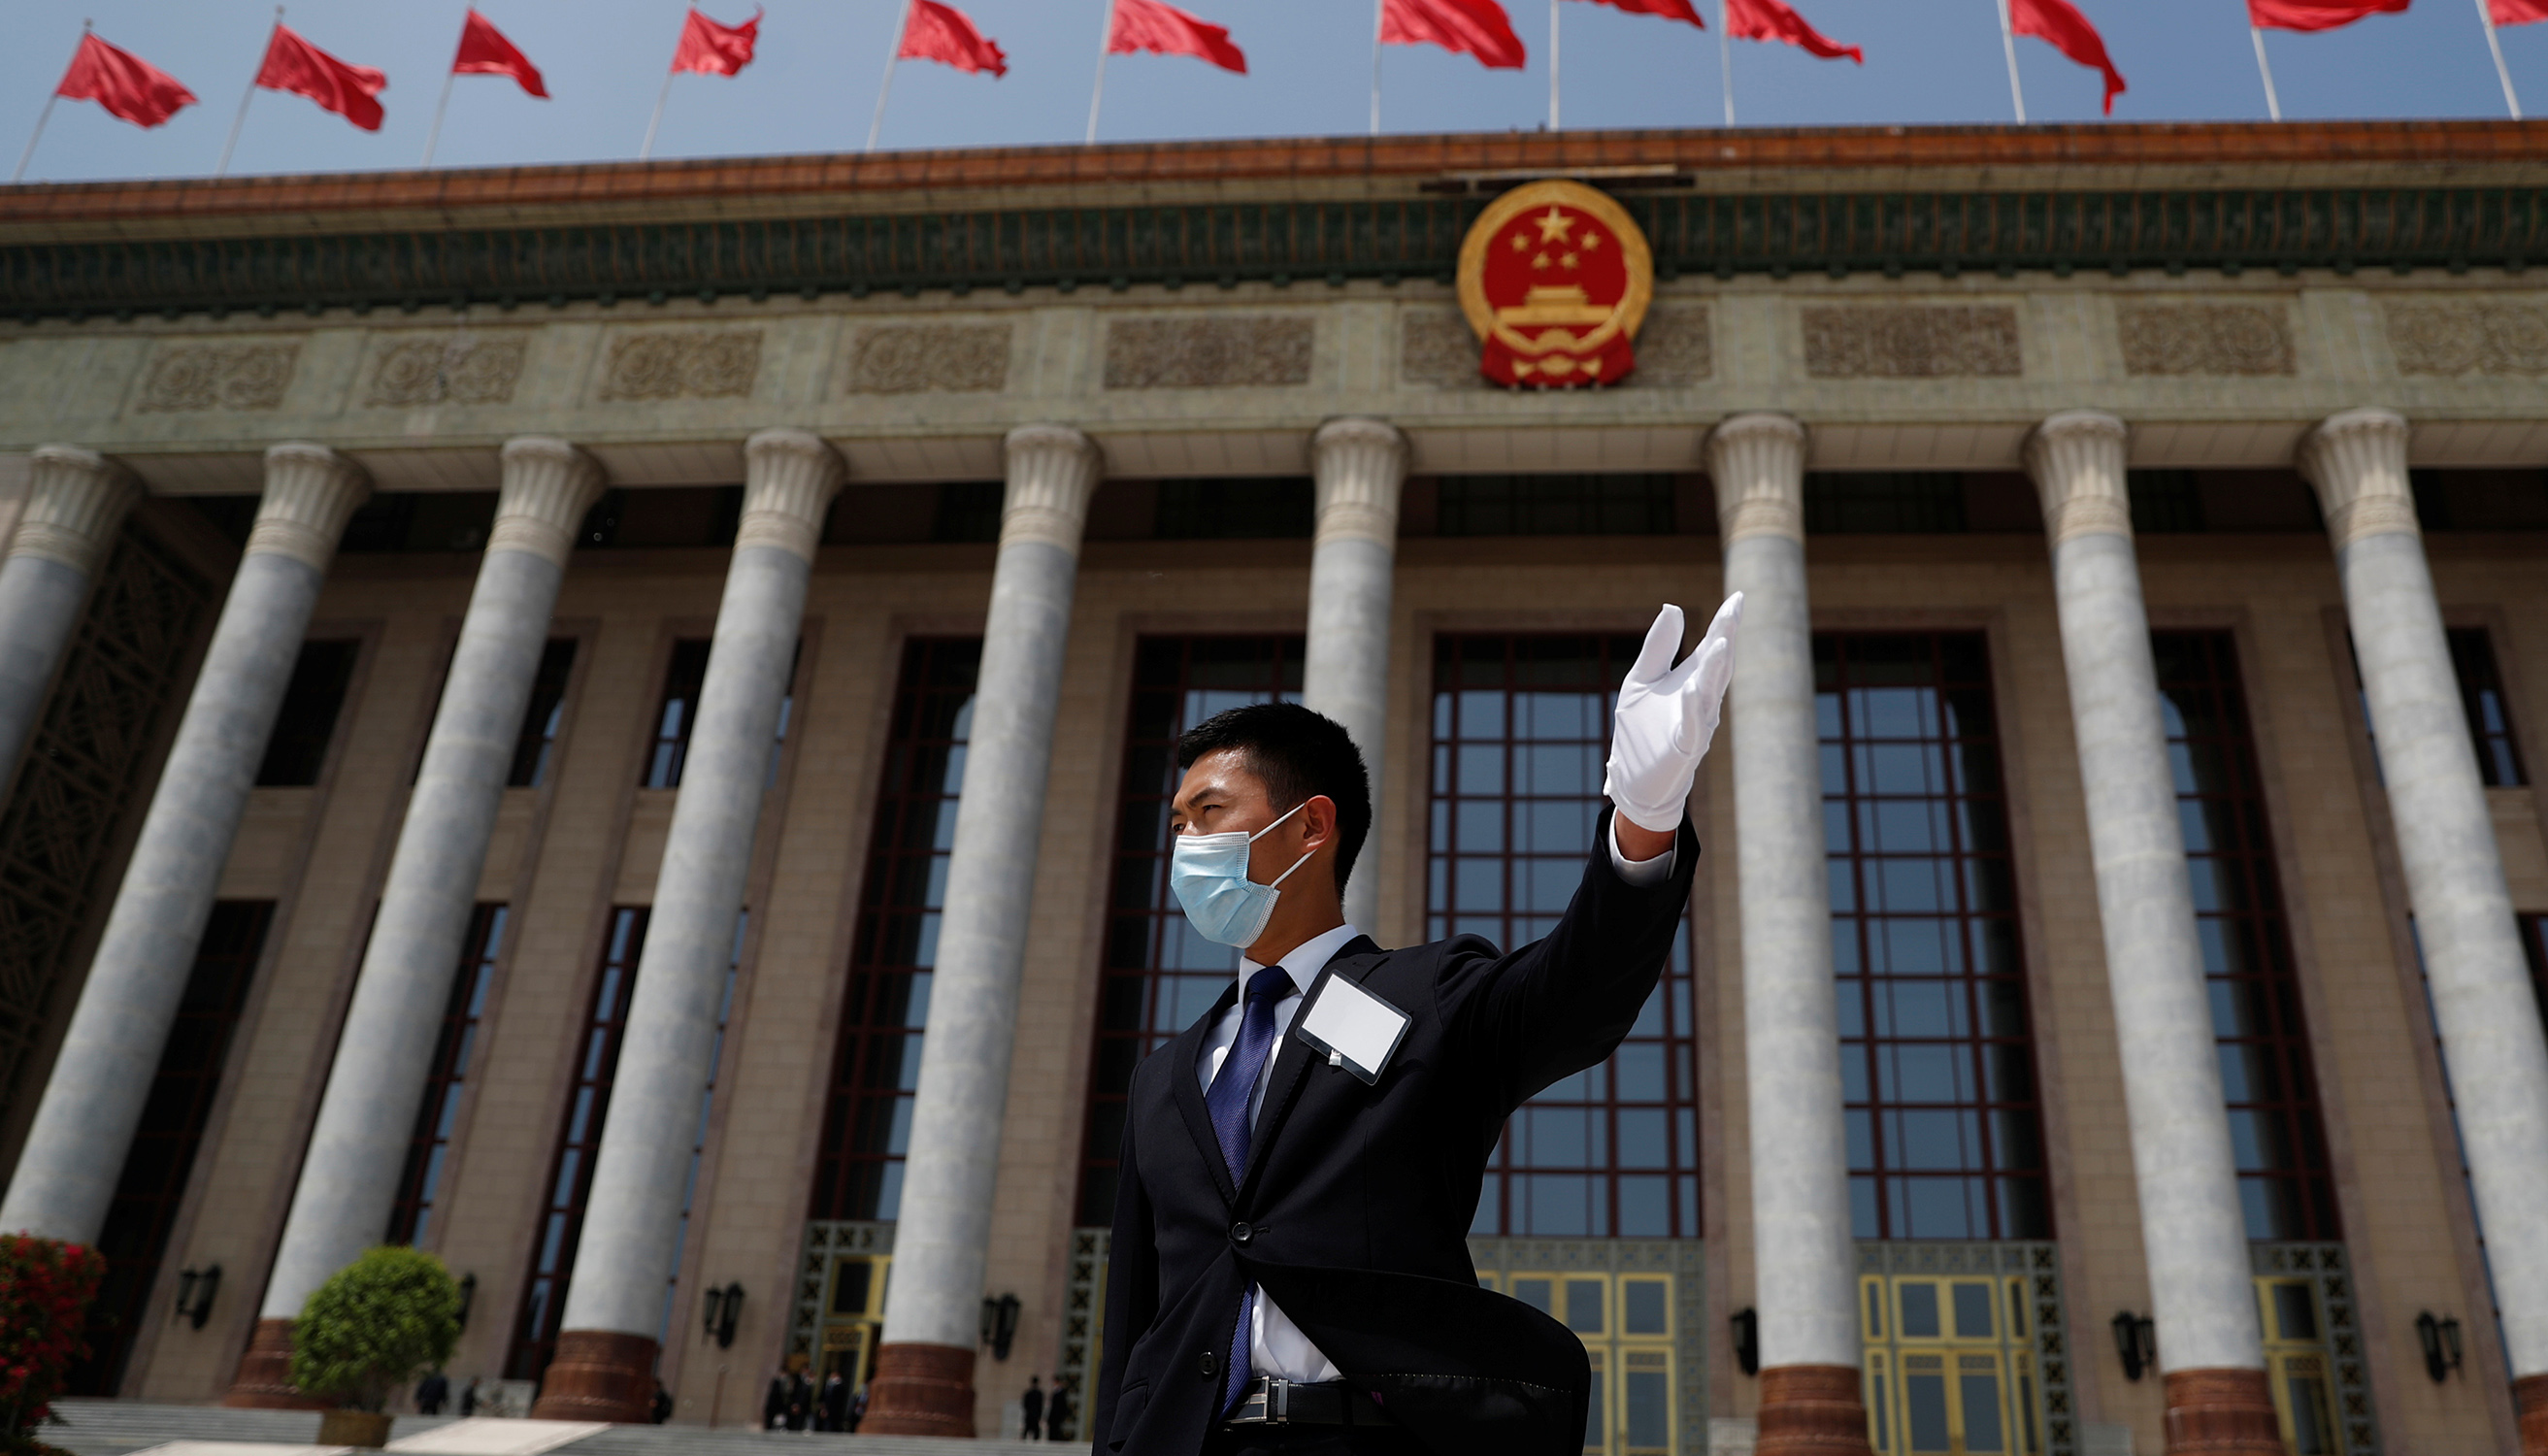 Sicherheitsbeamter mit Mund-Nasenschutz vor der Großen Halle des Volkes in Beijing